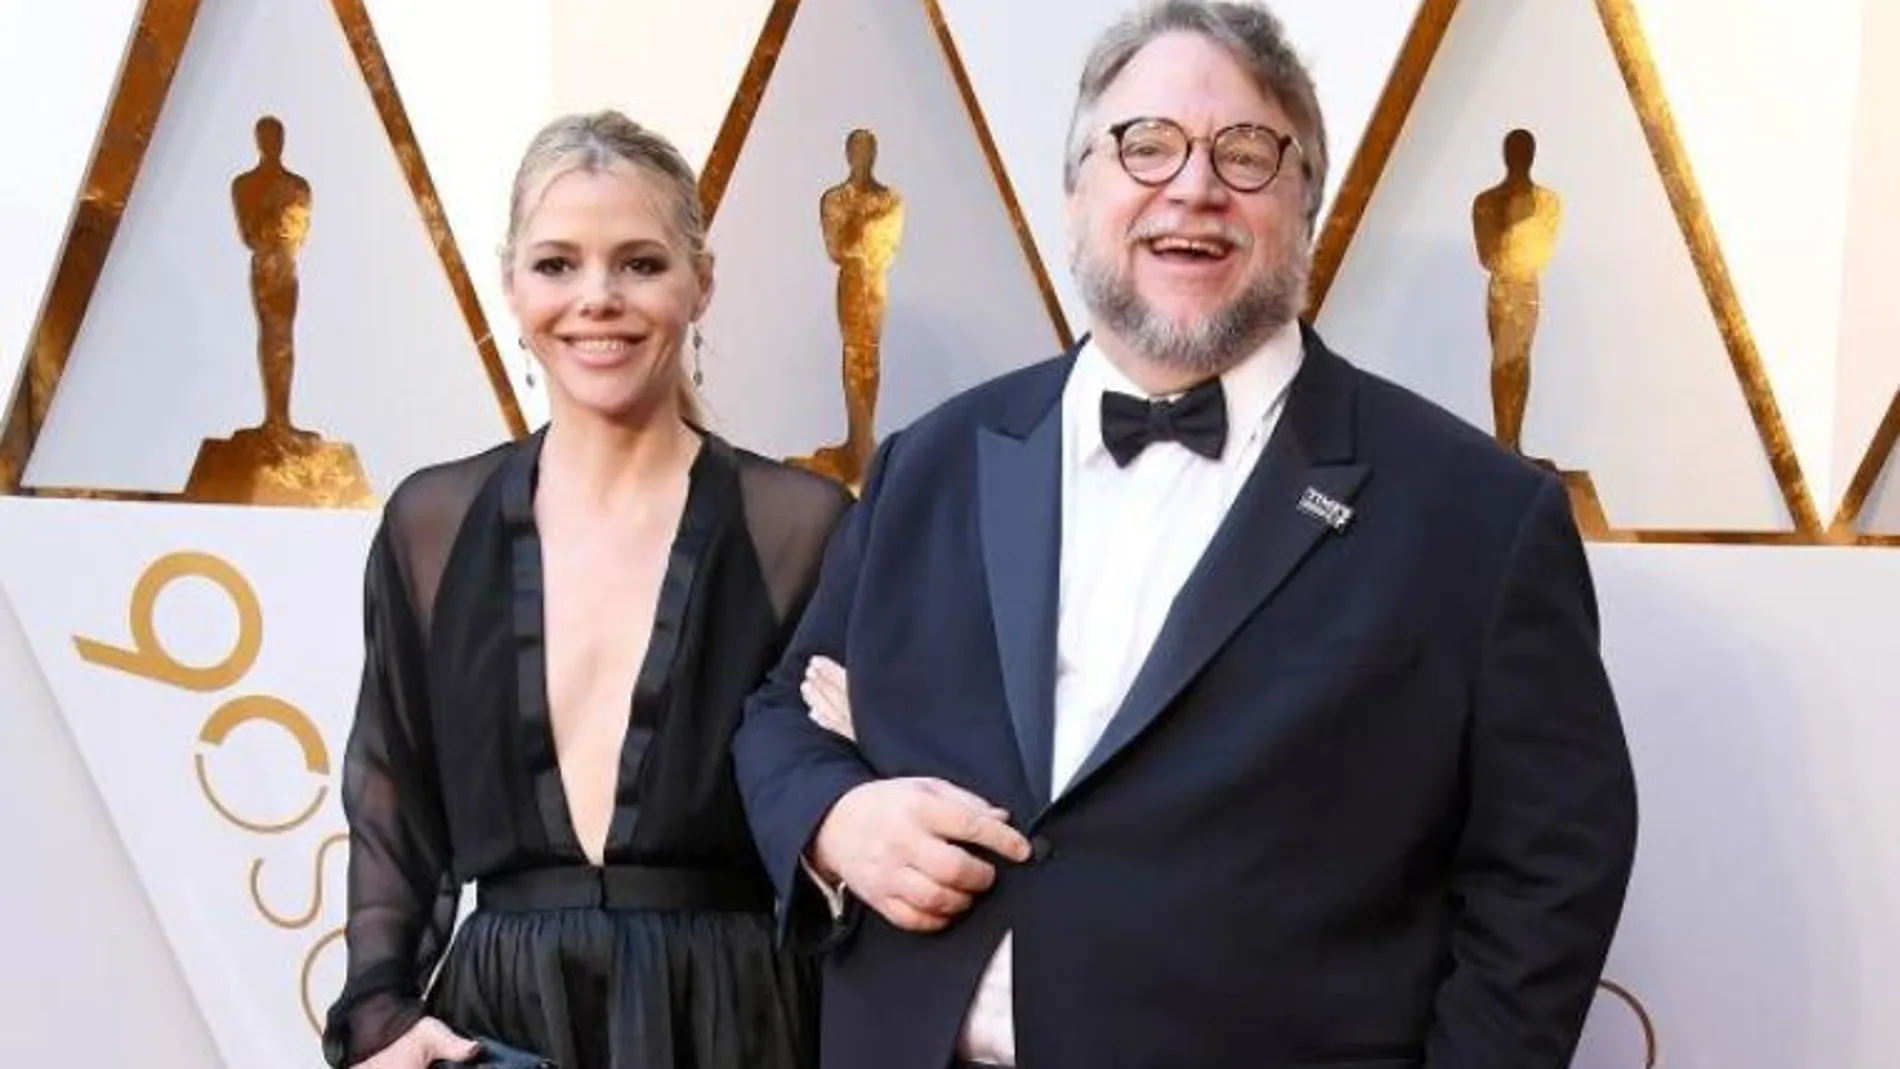 La escritora Kim Morgan acompañó a Guillermo del Toro en la ceremonia del Oscar 2018